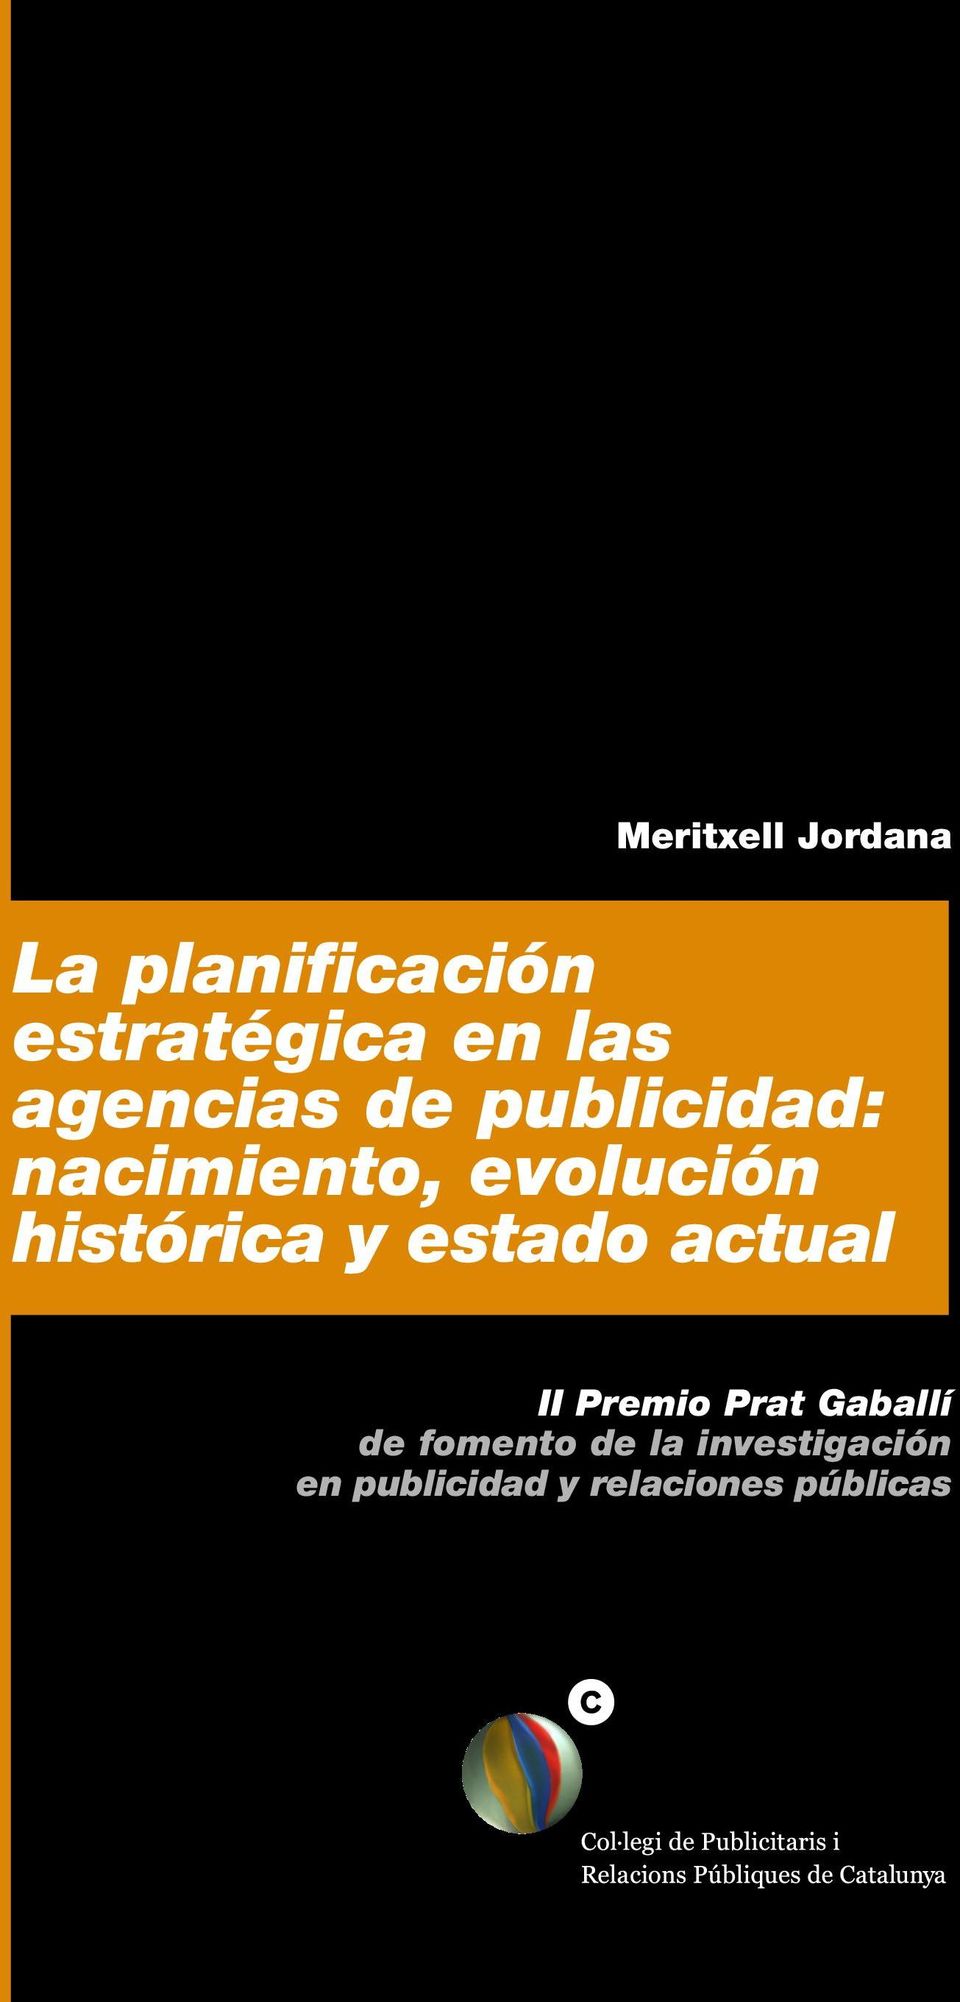 estado actual II Premio Prat Gaballí de fomento